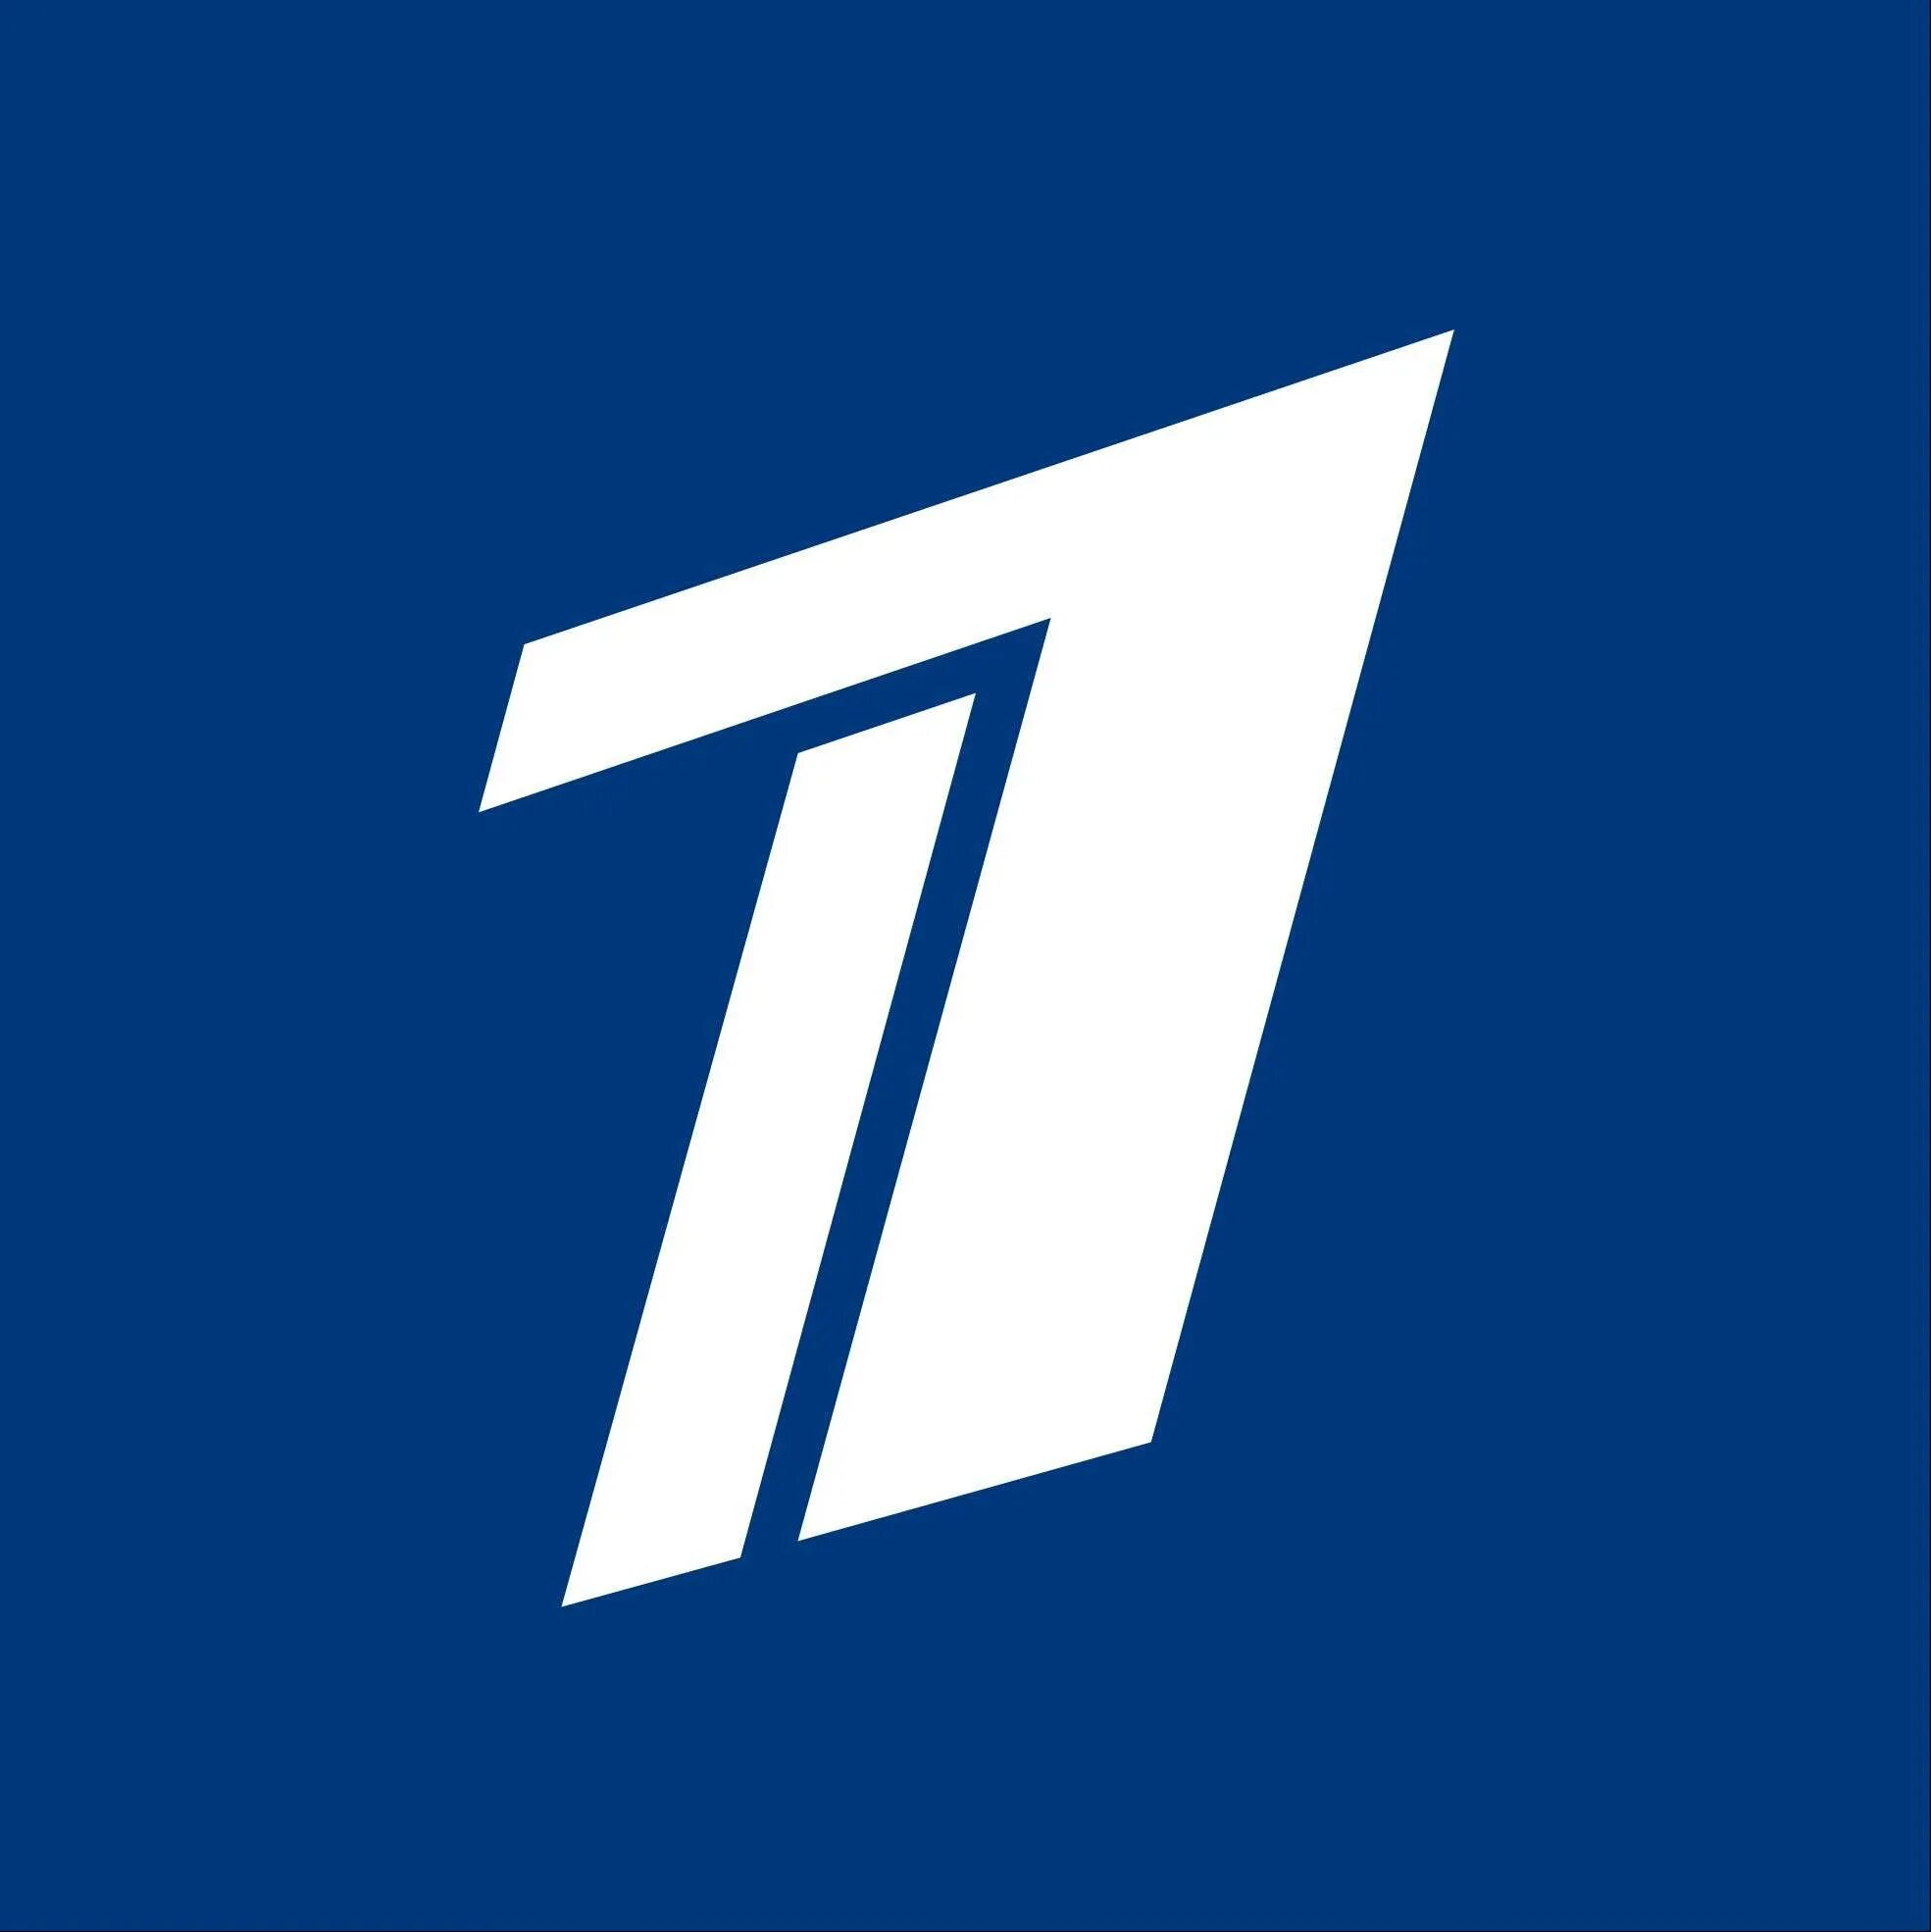 Https tv u. Первый канал логотип. Логотип первый канал 2001. Первый канал логотип PNG. Первый канал Всемирная сеть.